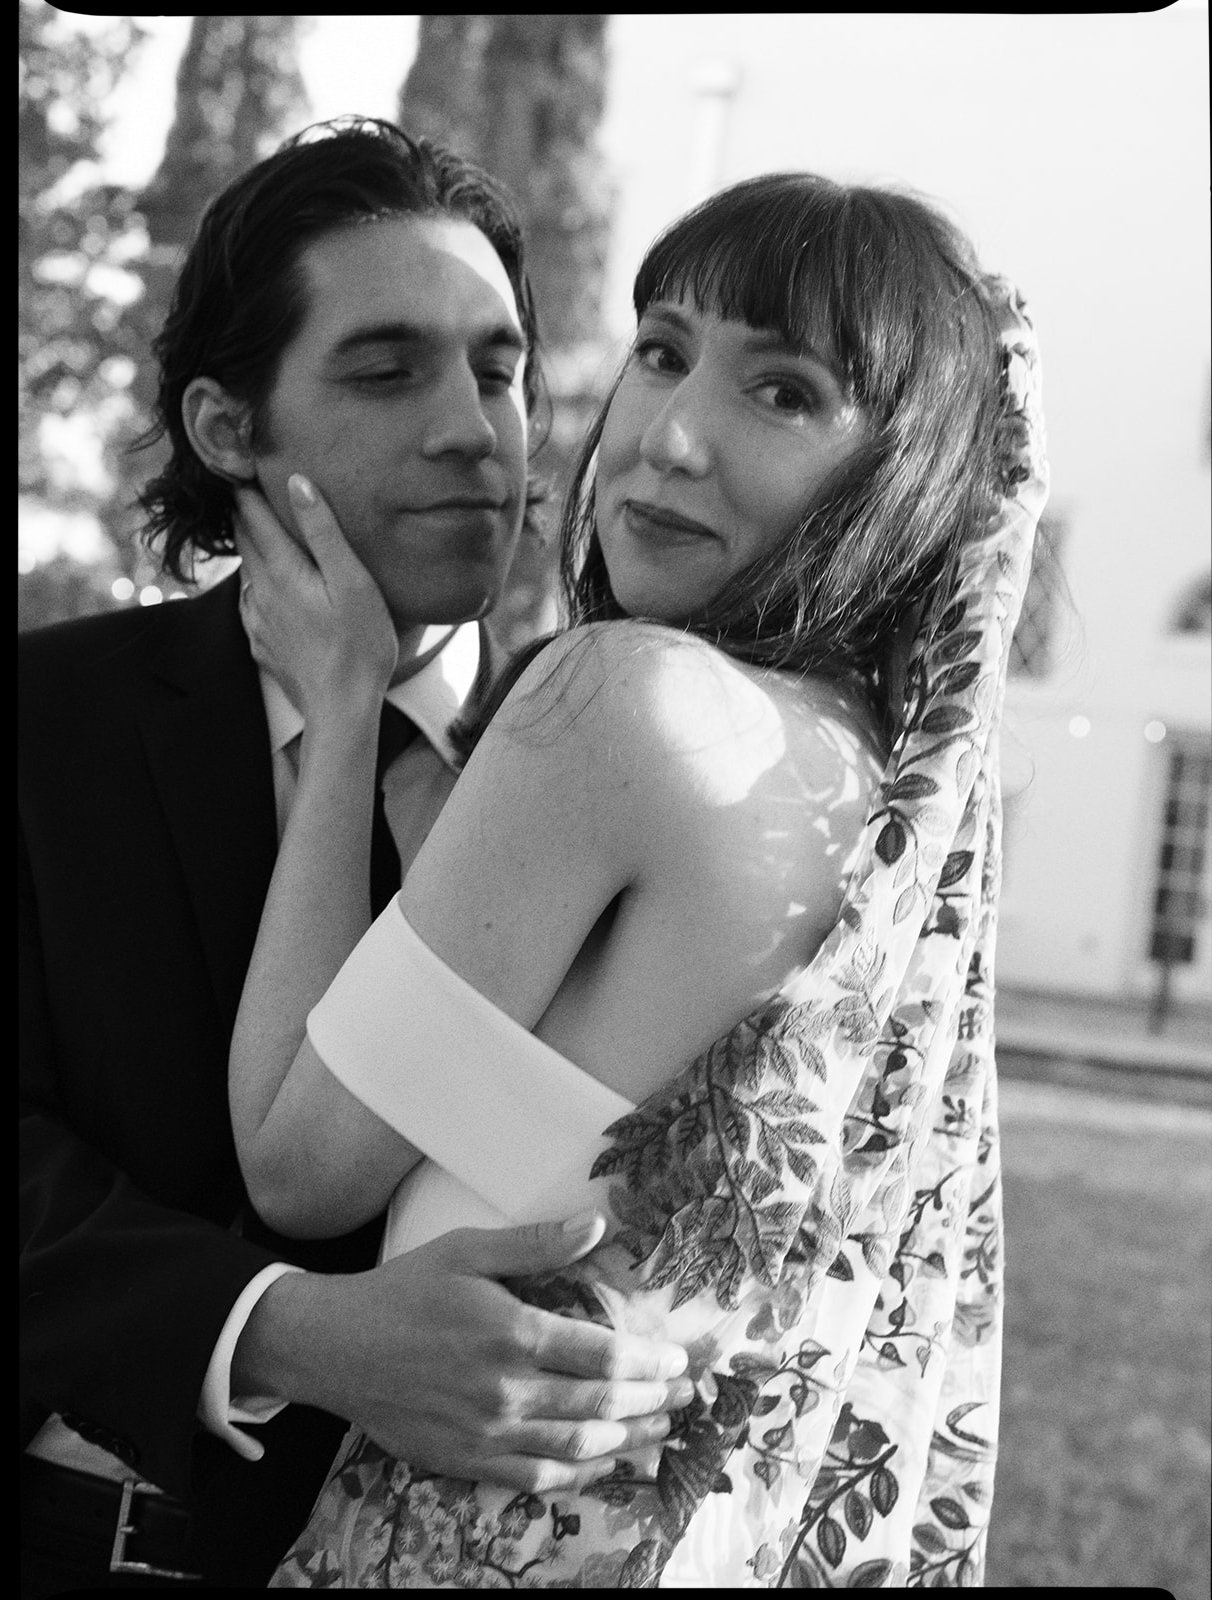 Best-Austin-Wedding-Photographers-Elopement-Film-35mm-Asheville-Santa-Barbara-Laguna-Gloria-48.jpg